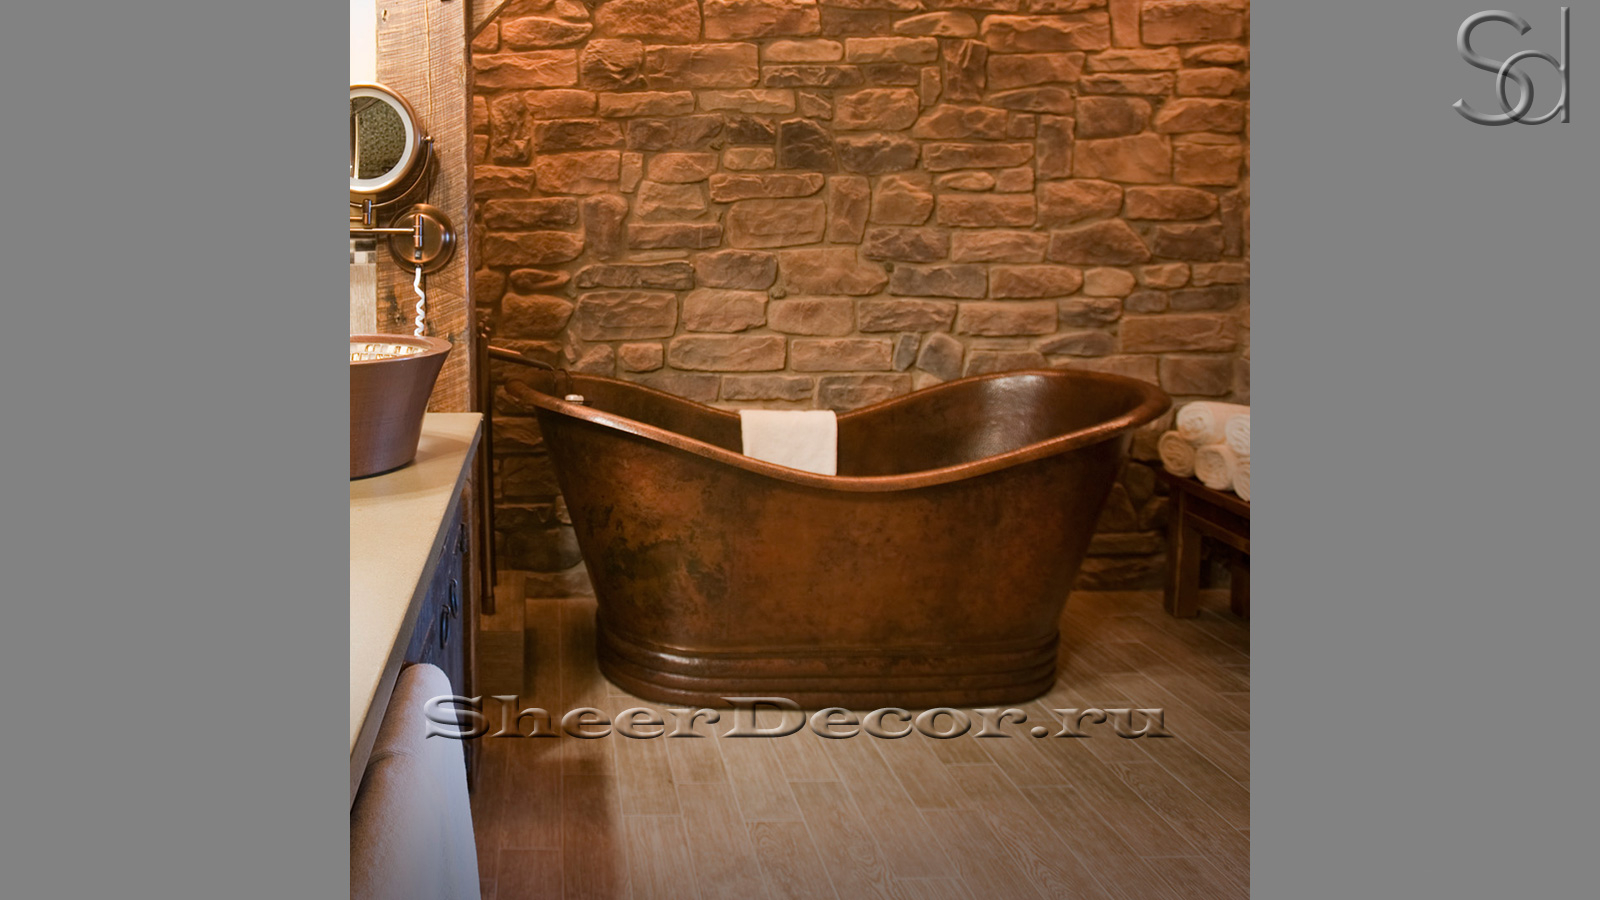 Дизайнерская ванна Sandra M24 из бронзы Bronze0683004524 производство ИНДОНЕЗИЯ_1